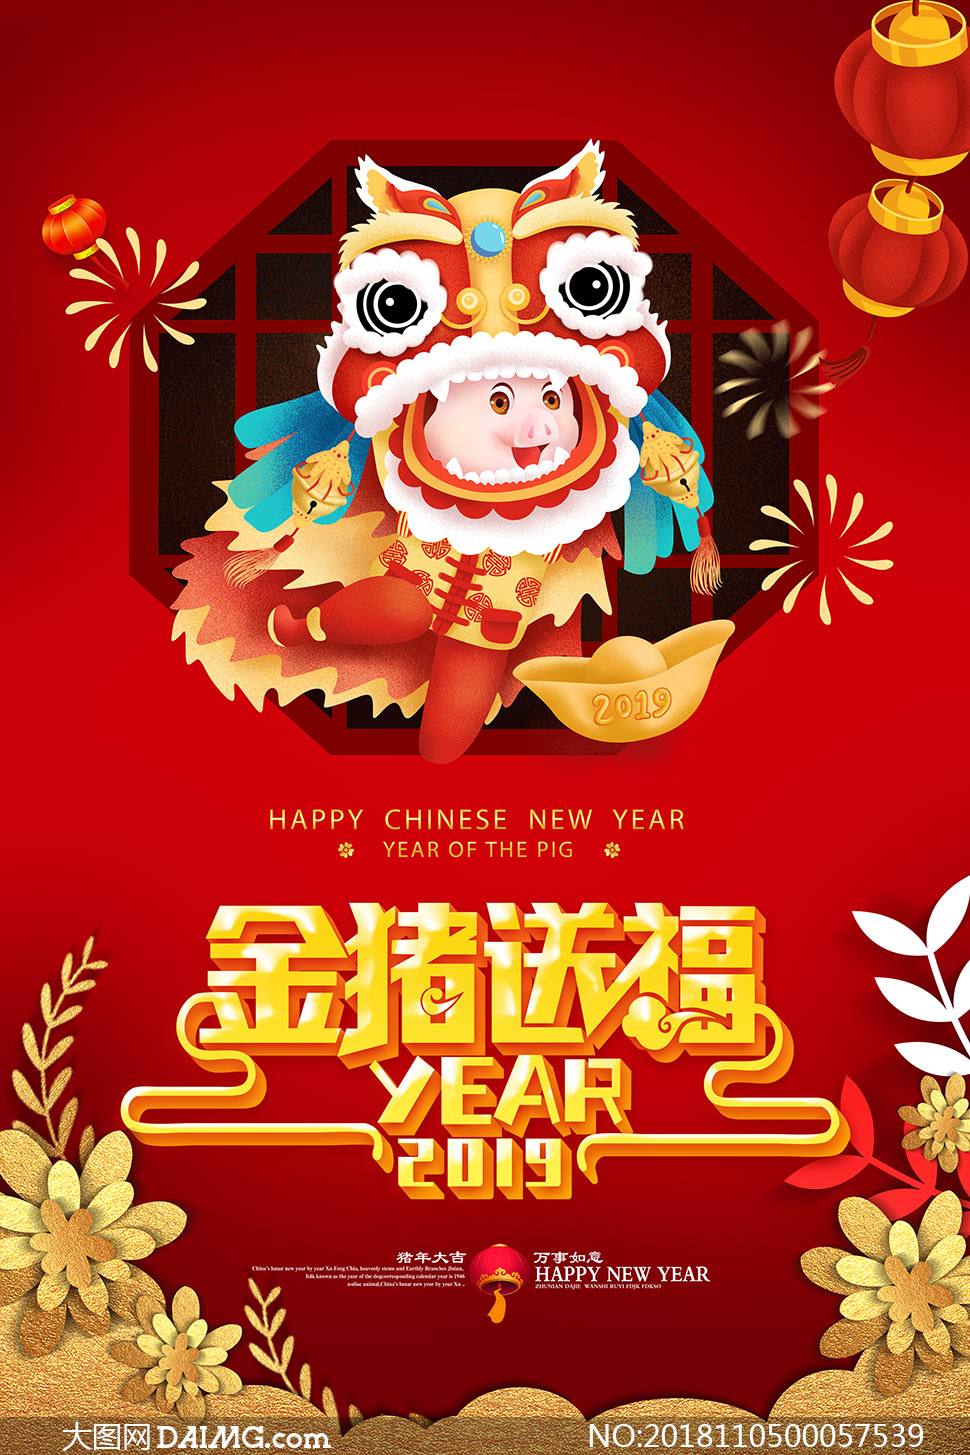 2019金猪送福宣传海报设计psd源文件